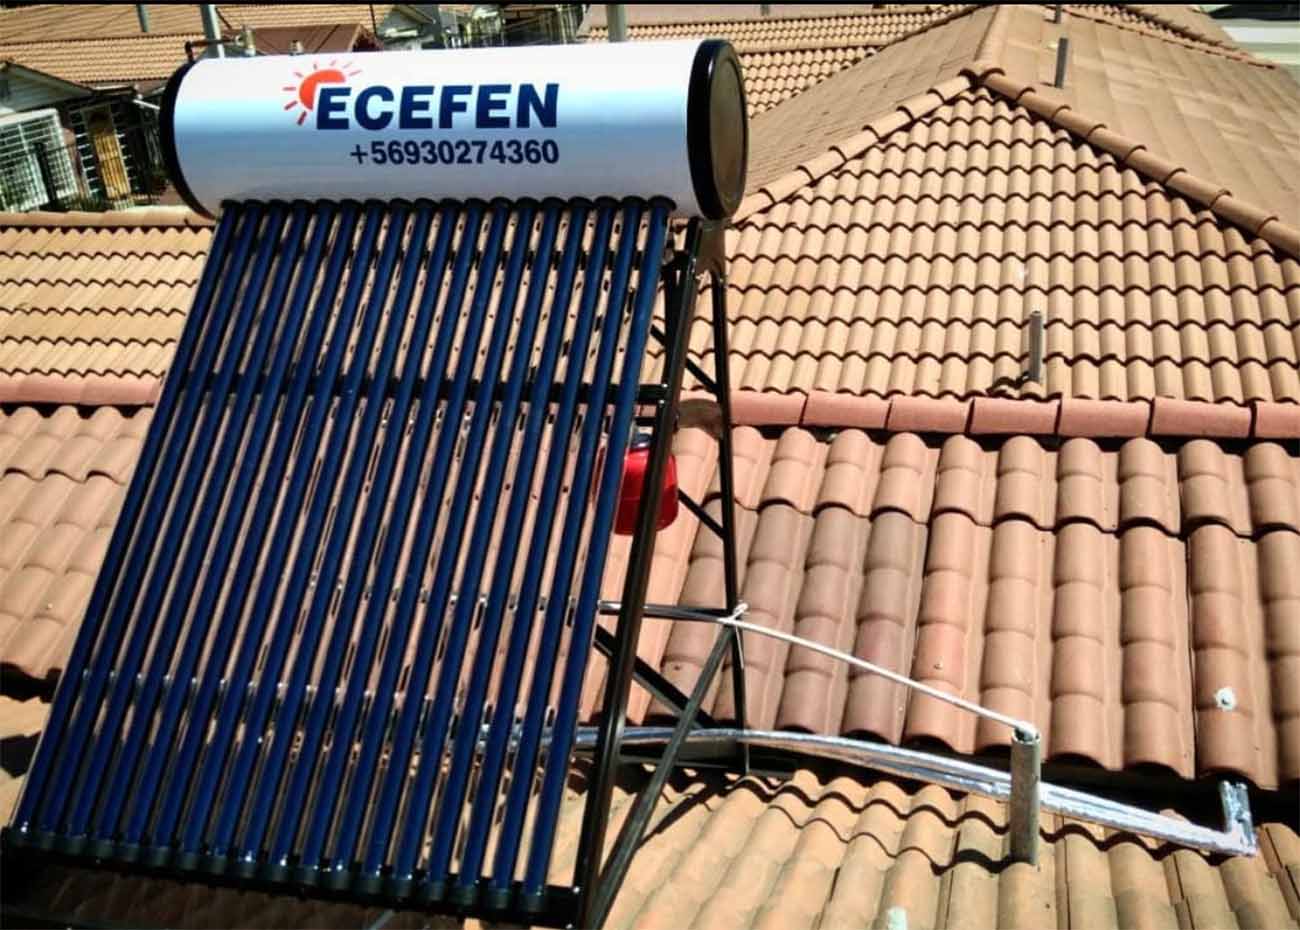 Ecefen. Panel sobre el tejado